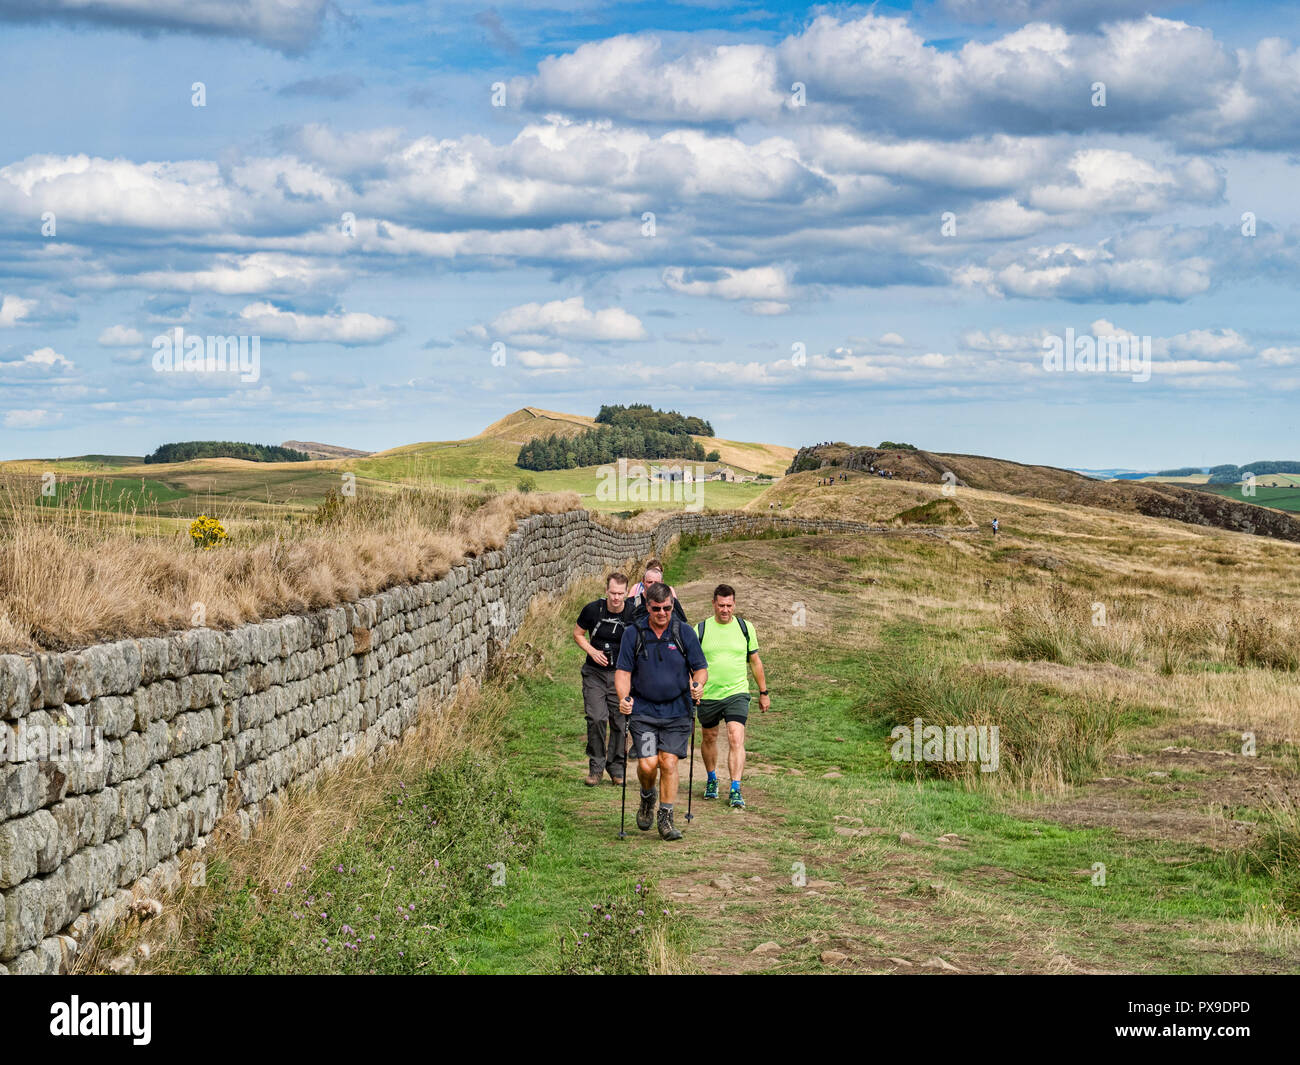 11 Août 2018 : Mur d'Hadrien, Northumberland - groupe de randonneurs avec des bâtons de randonnée marche sur le mur d'Hadrien au chemin des falaises sur une guerre Walltown Banque D'Images